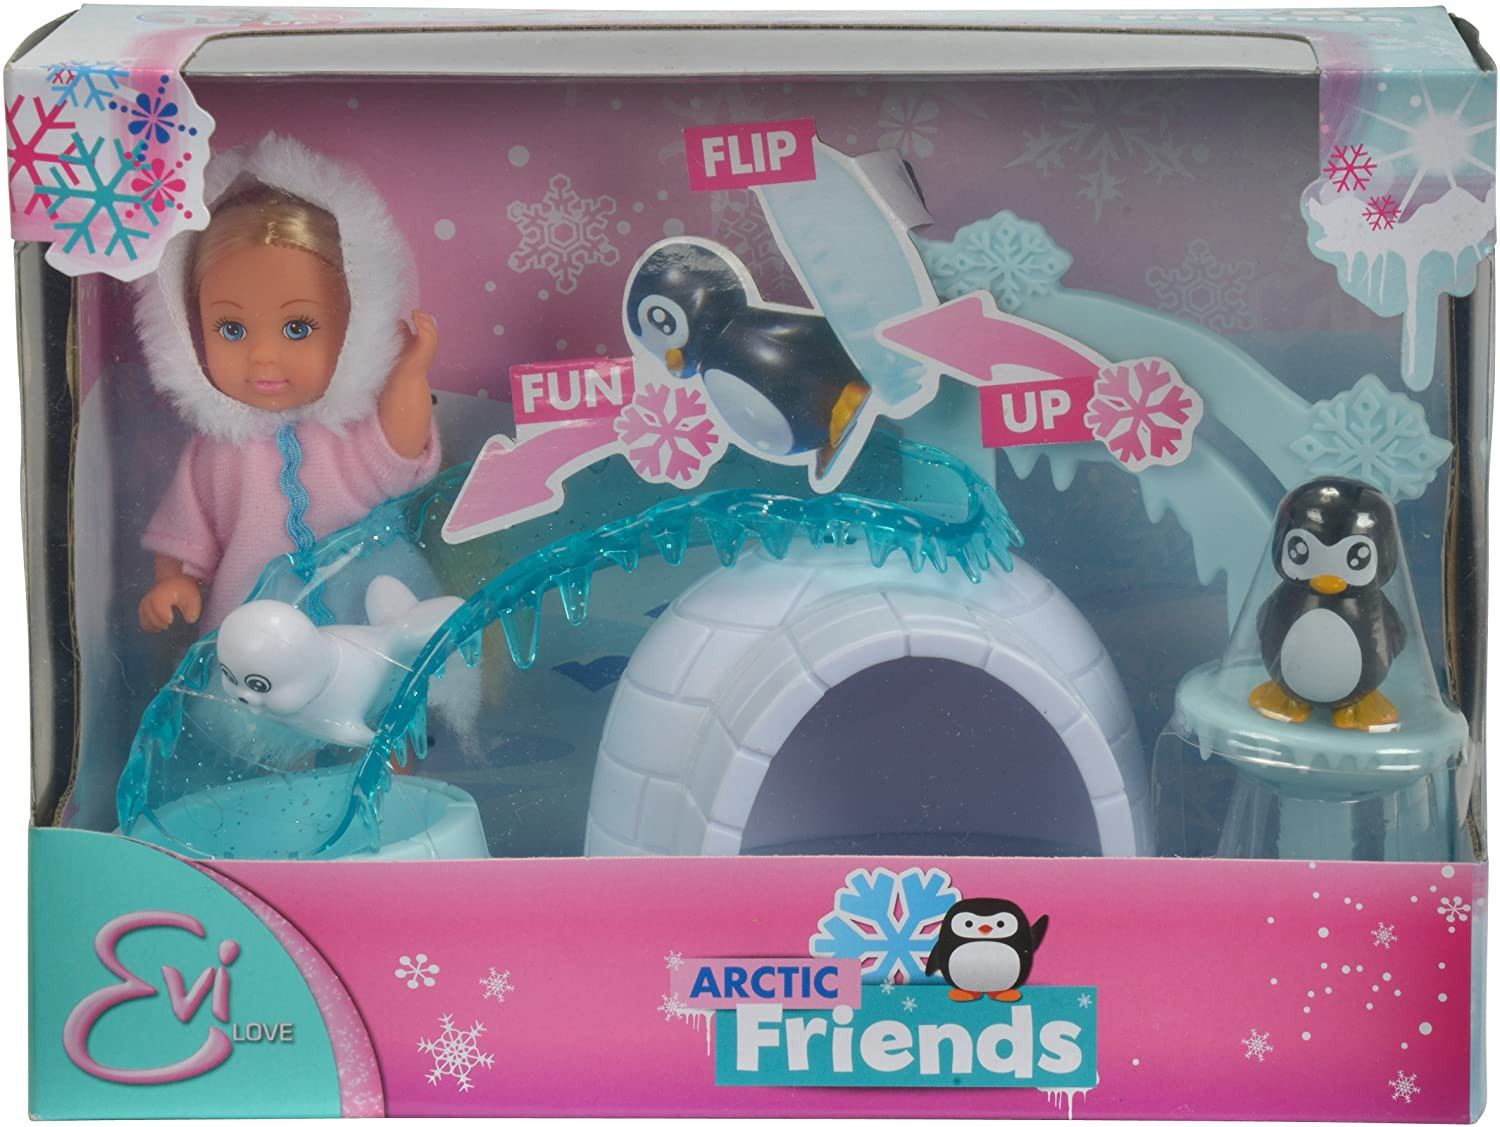 Evi Love Puppe im Winteroutfit und ihre arktischen Freunden